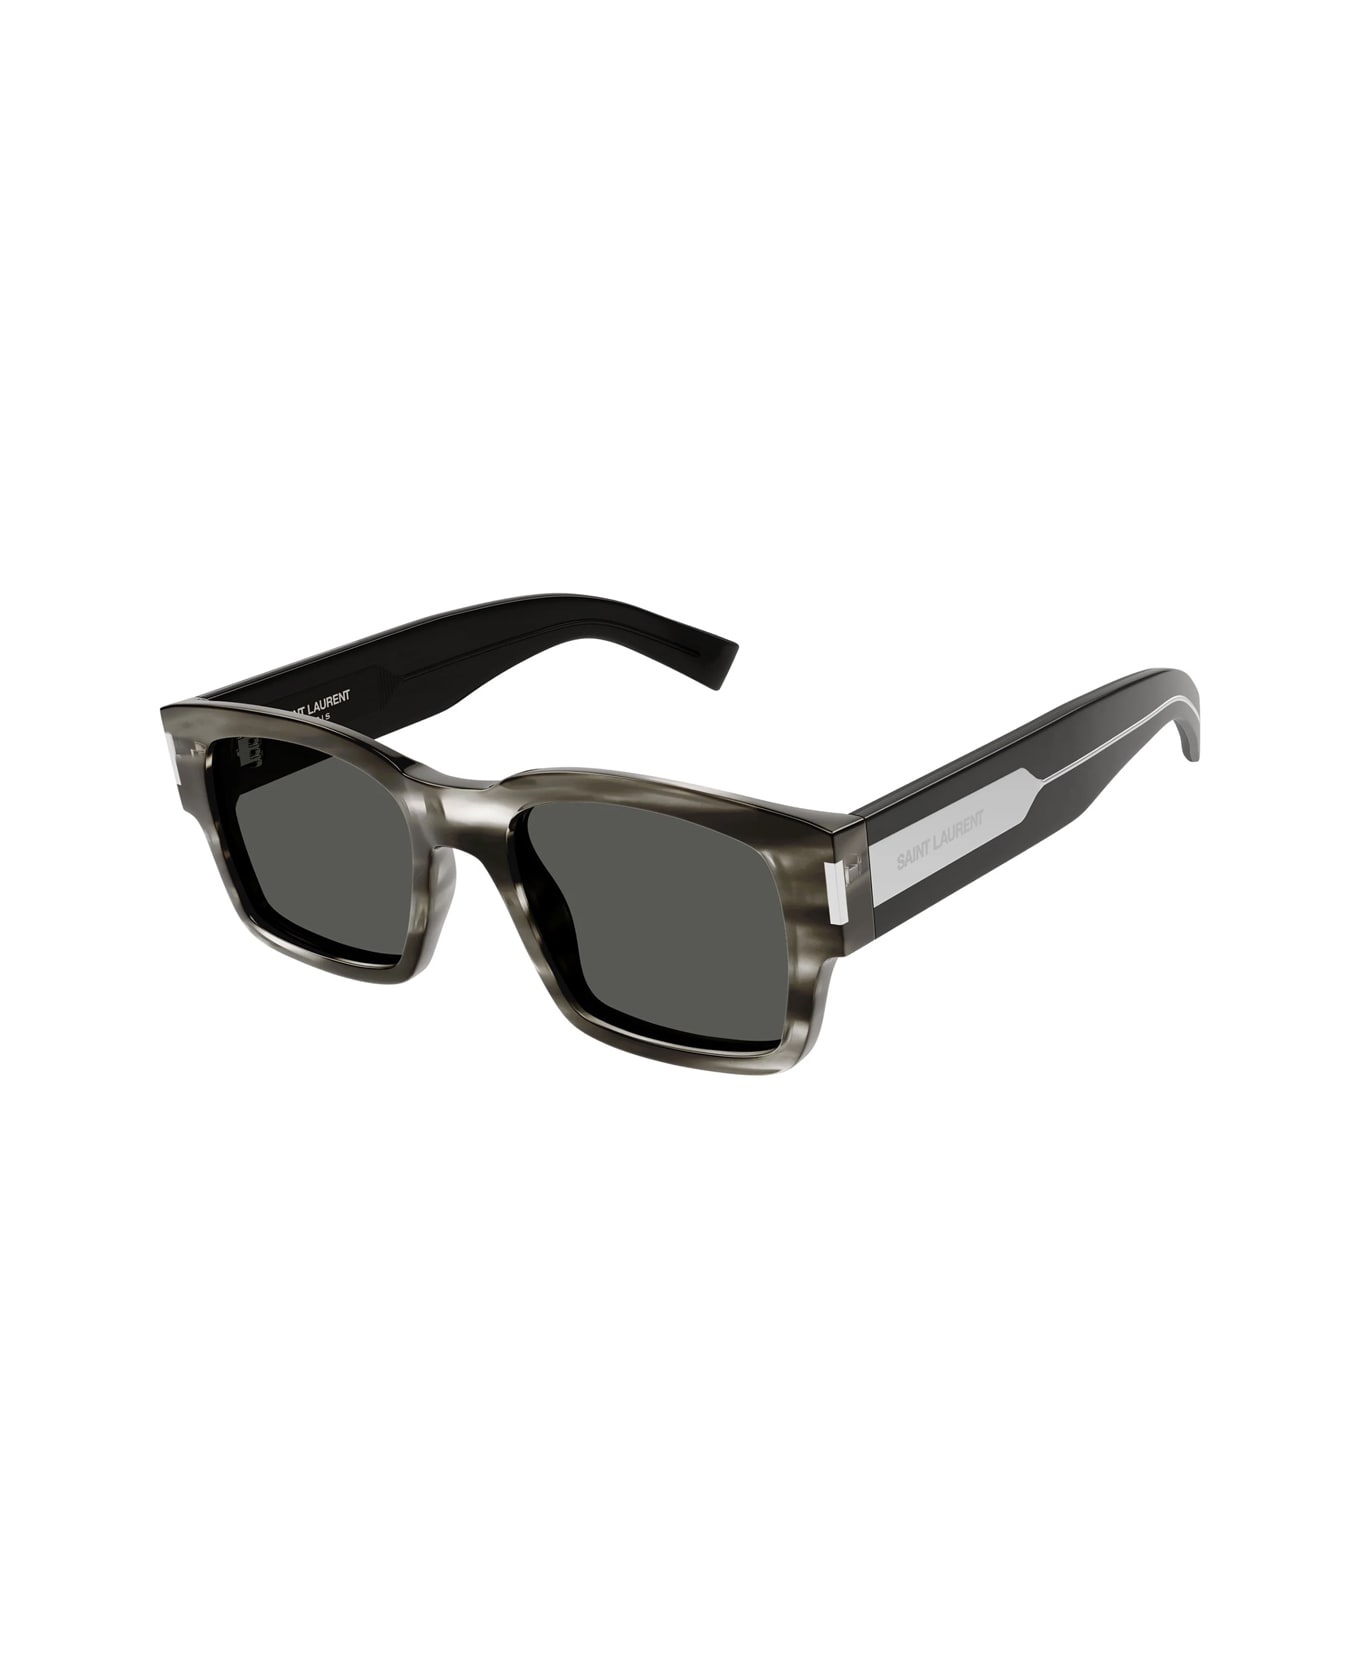 Saint Laurent Eyewear Sl 617 004 Sunglasses - Grigio